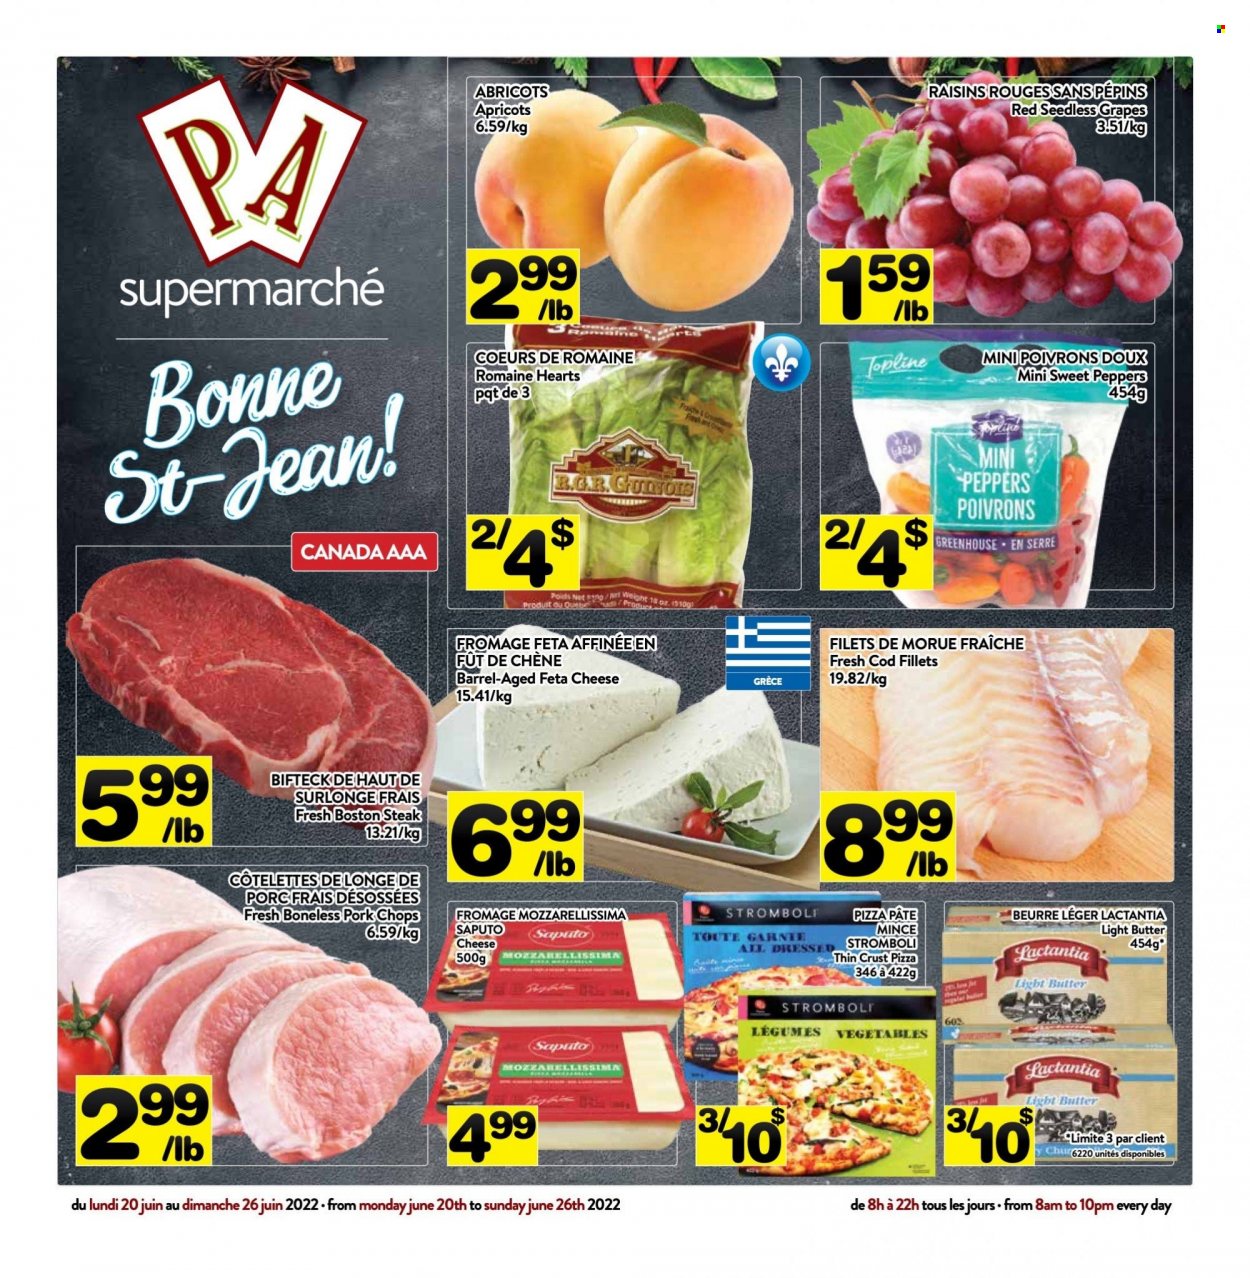 thumbnail - Circulaire PA Supermarché - 20 Juin 2022 - 26 Juin 2022 - Produits soldés - abricots, steak, longe de porc, morue, pizza, féta, beurre, raisins. Page 1.